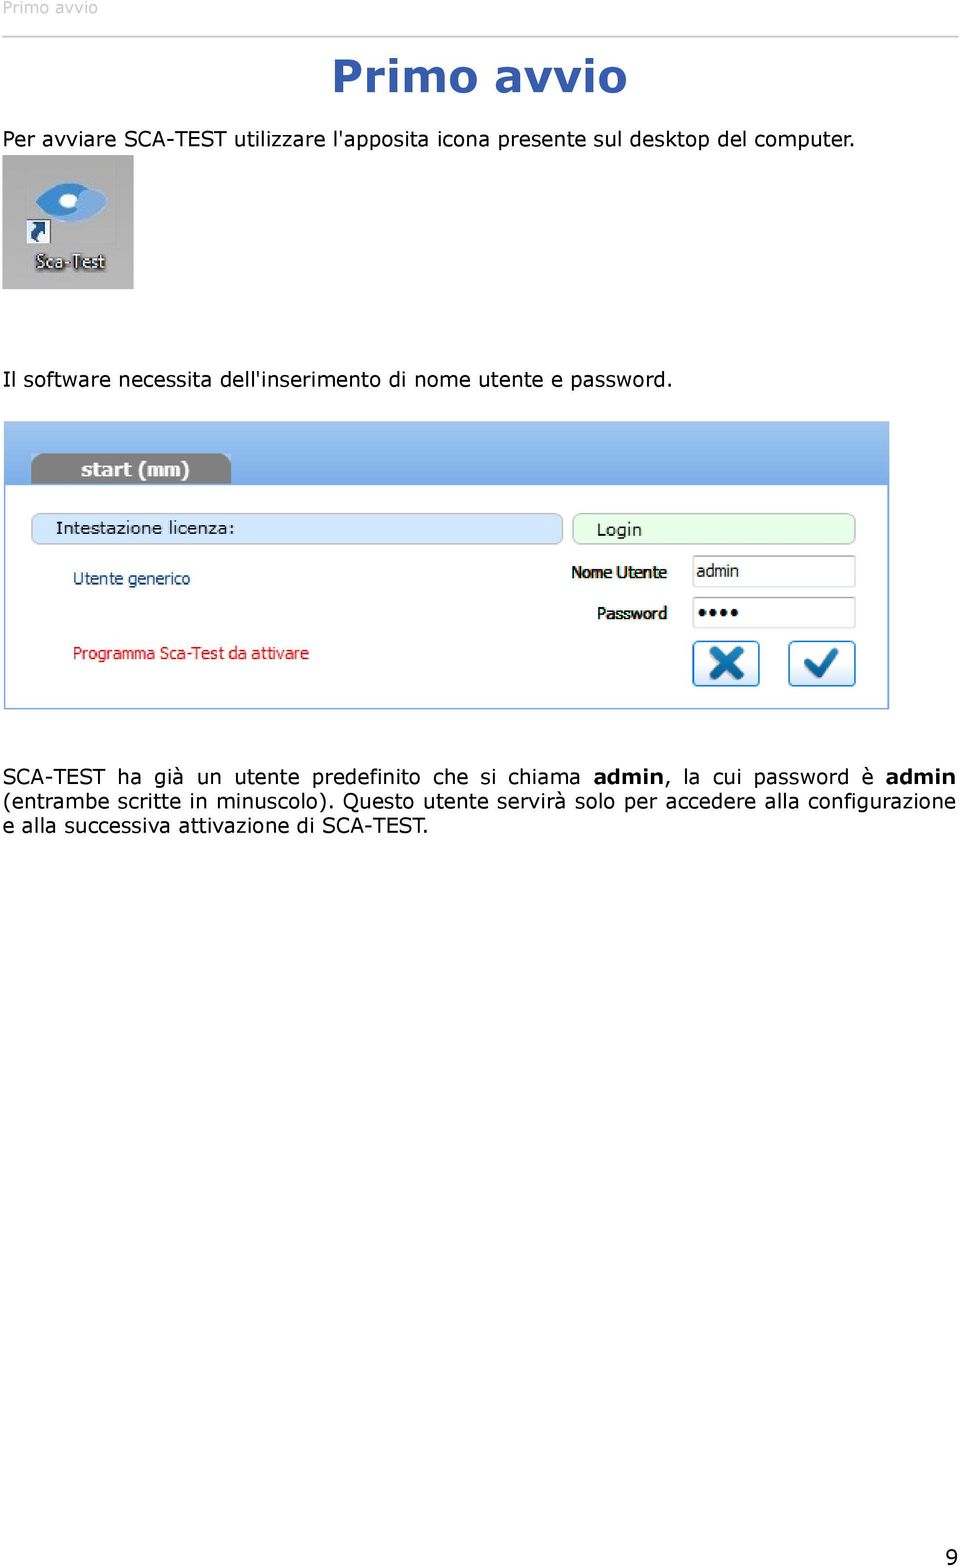 SCA-TEST ha già un utente predefinito che si chiama admin, la cui password è admin (entrambe